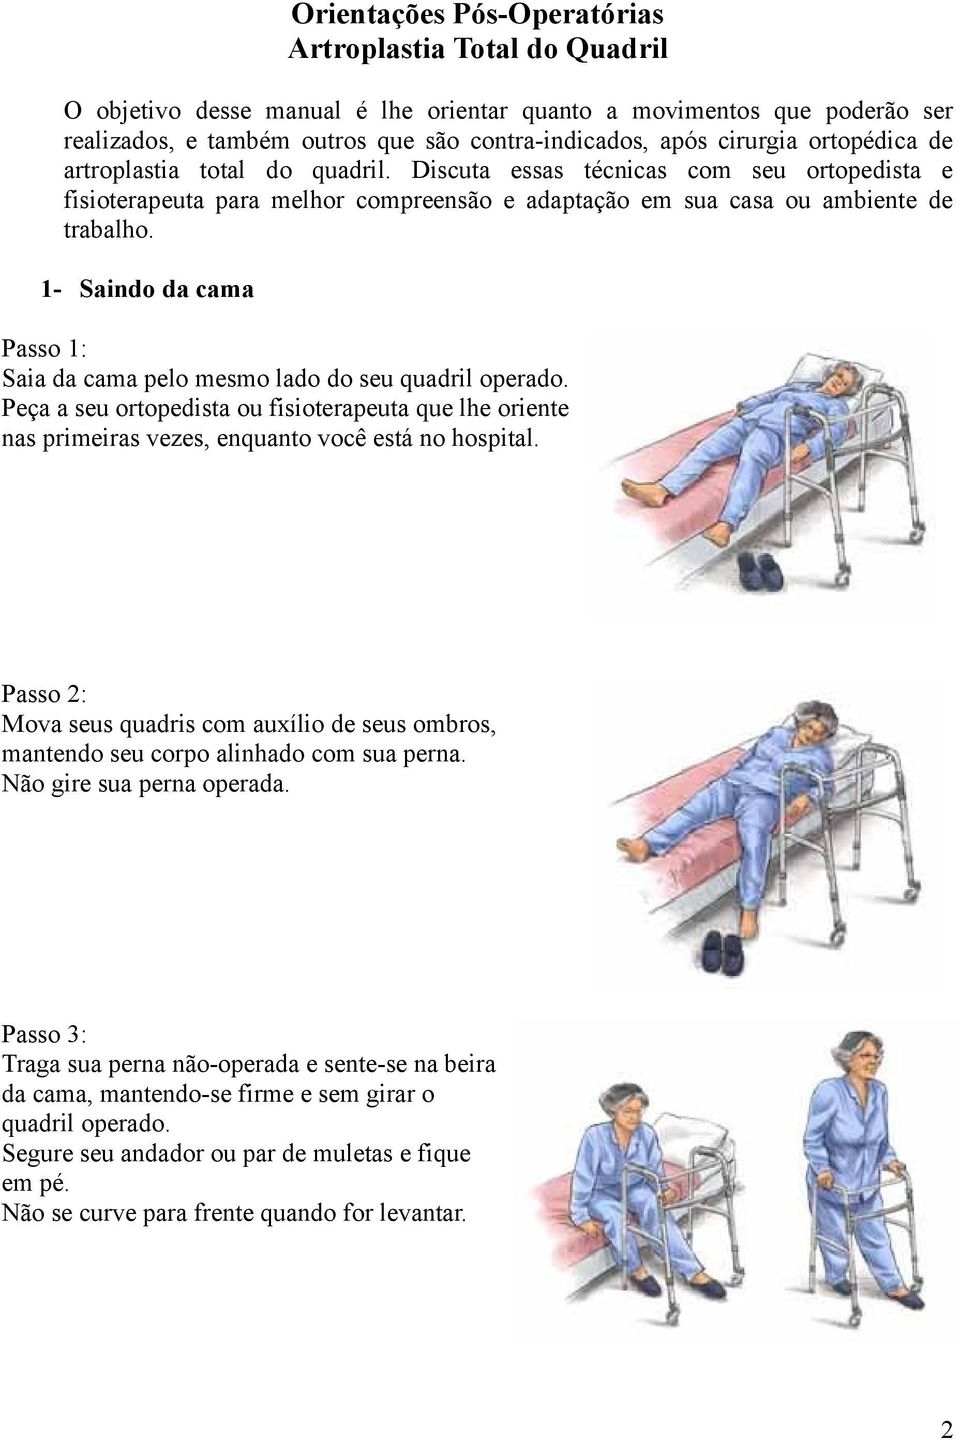 1- Saindo da cama Passo 1: Saia da cama pelo mesmo lado do seu quadril operado. Peça a seu ortopedista ou fisioterapeuta que lhe oriente nas primeiras vezes, enquanto você está no hospital.